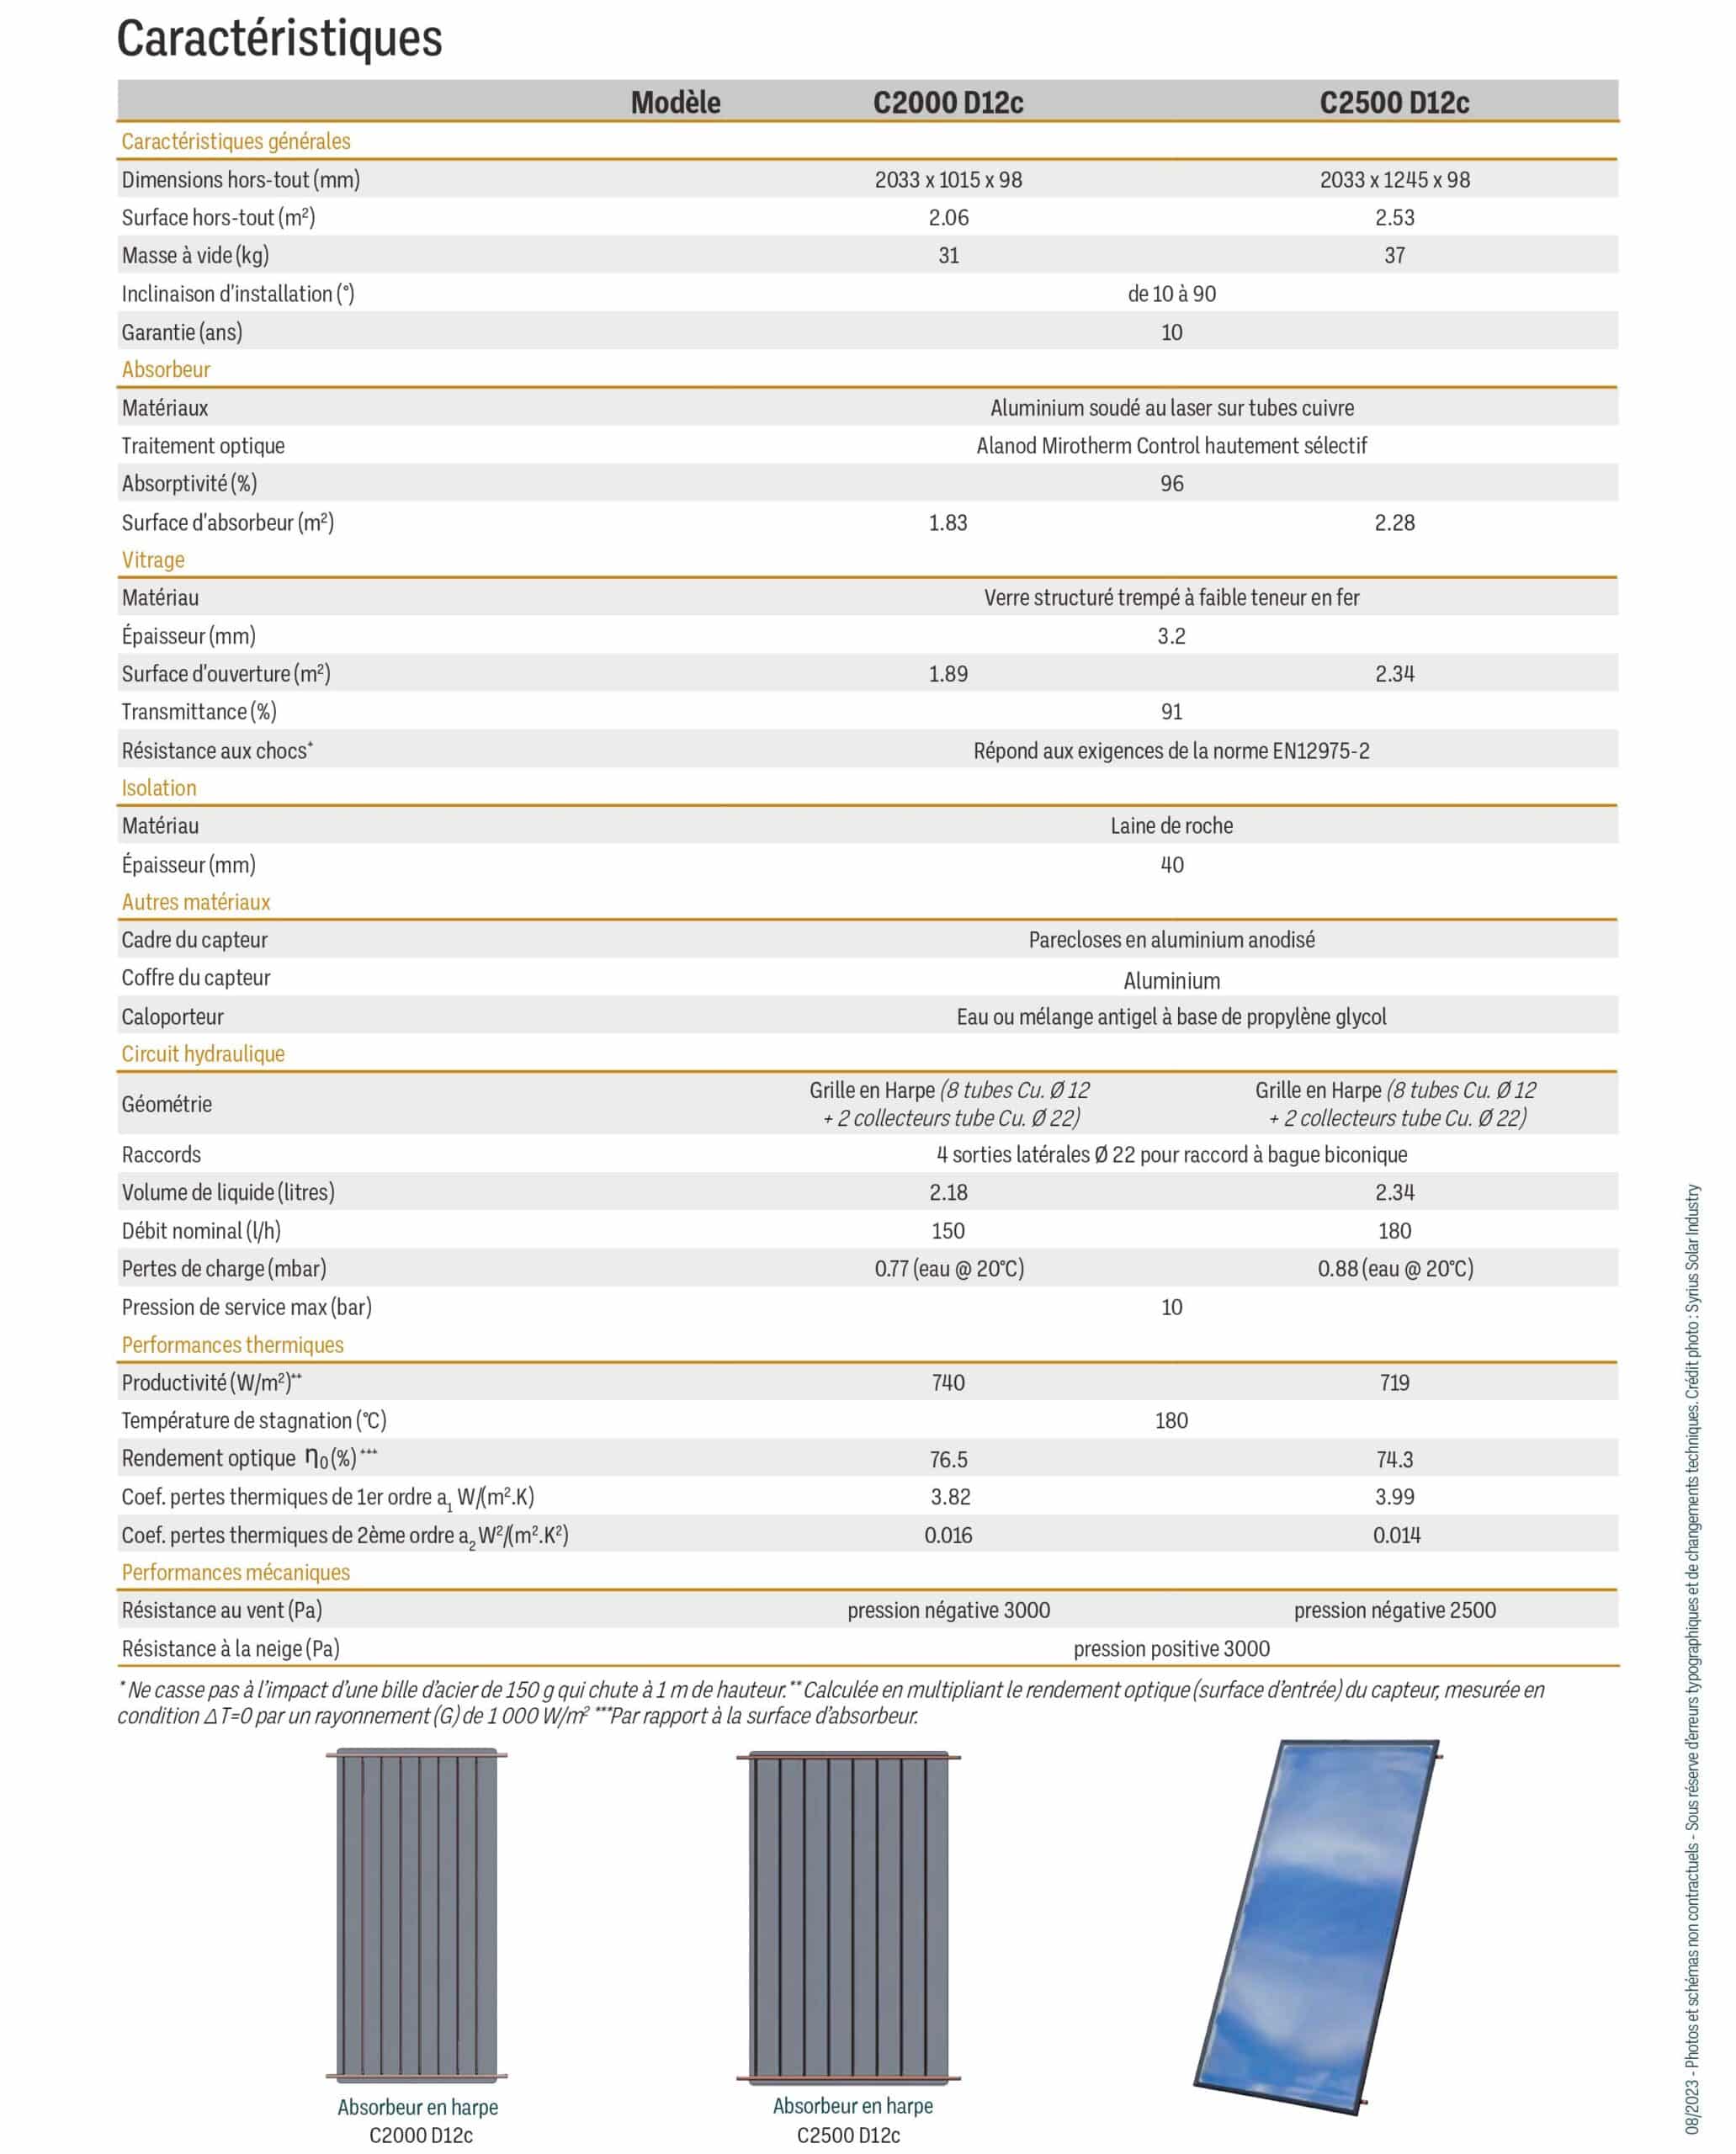 Caractéristiques capteurs solaires D12c